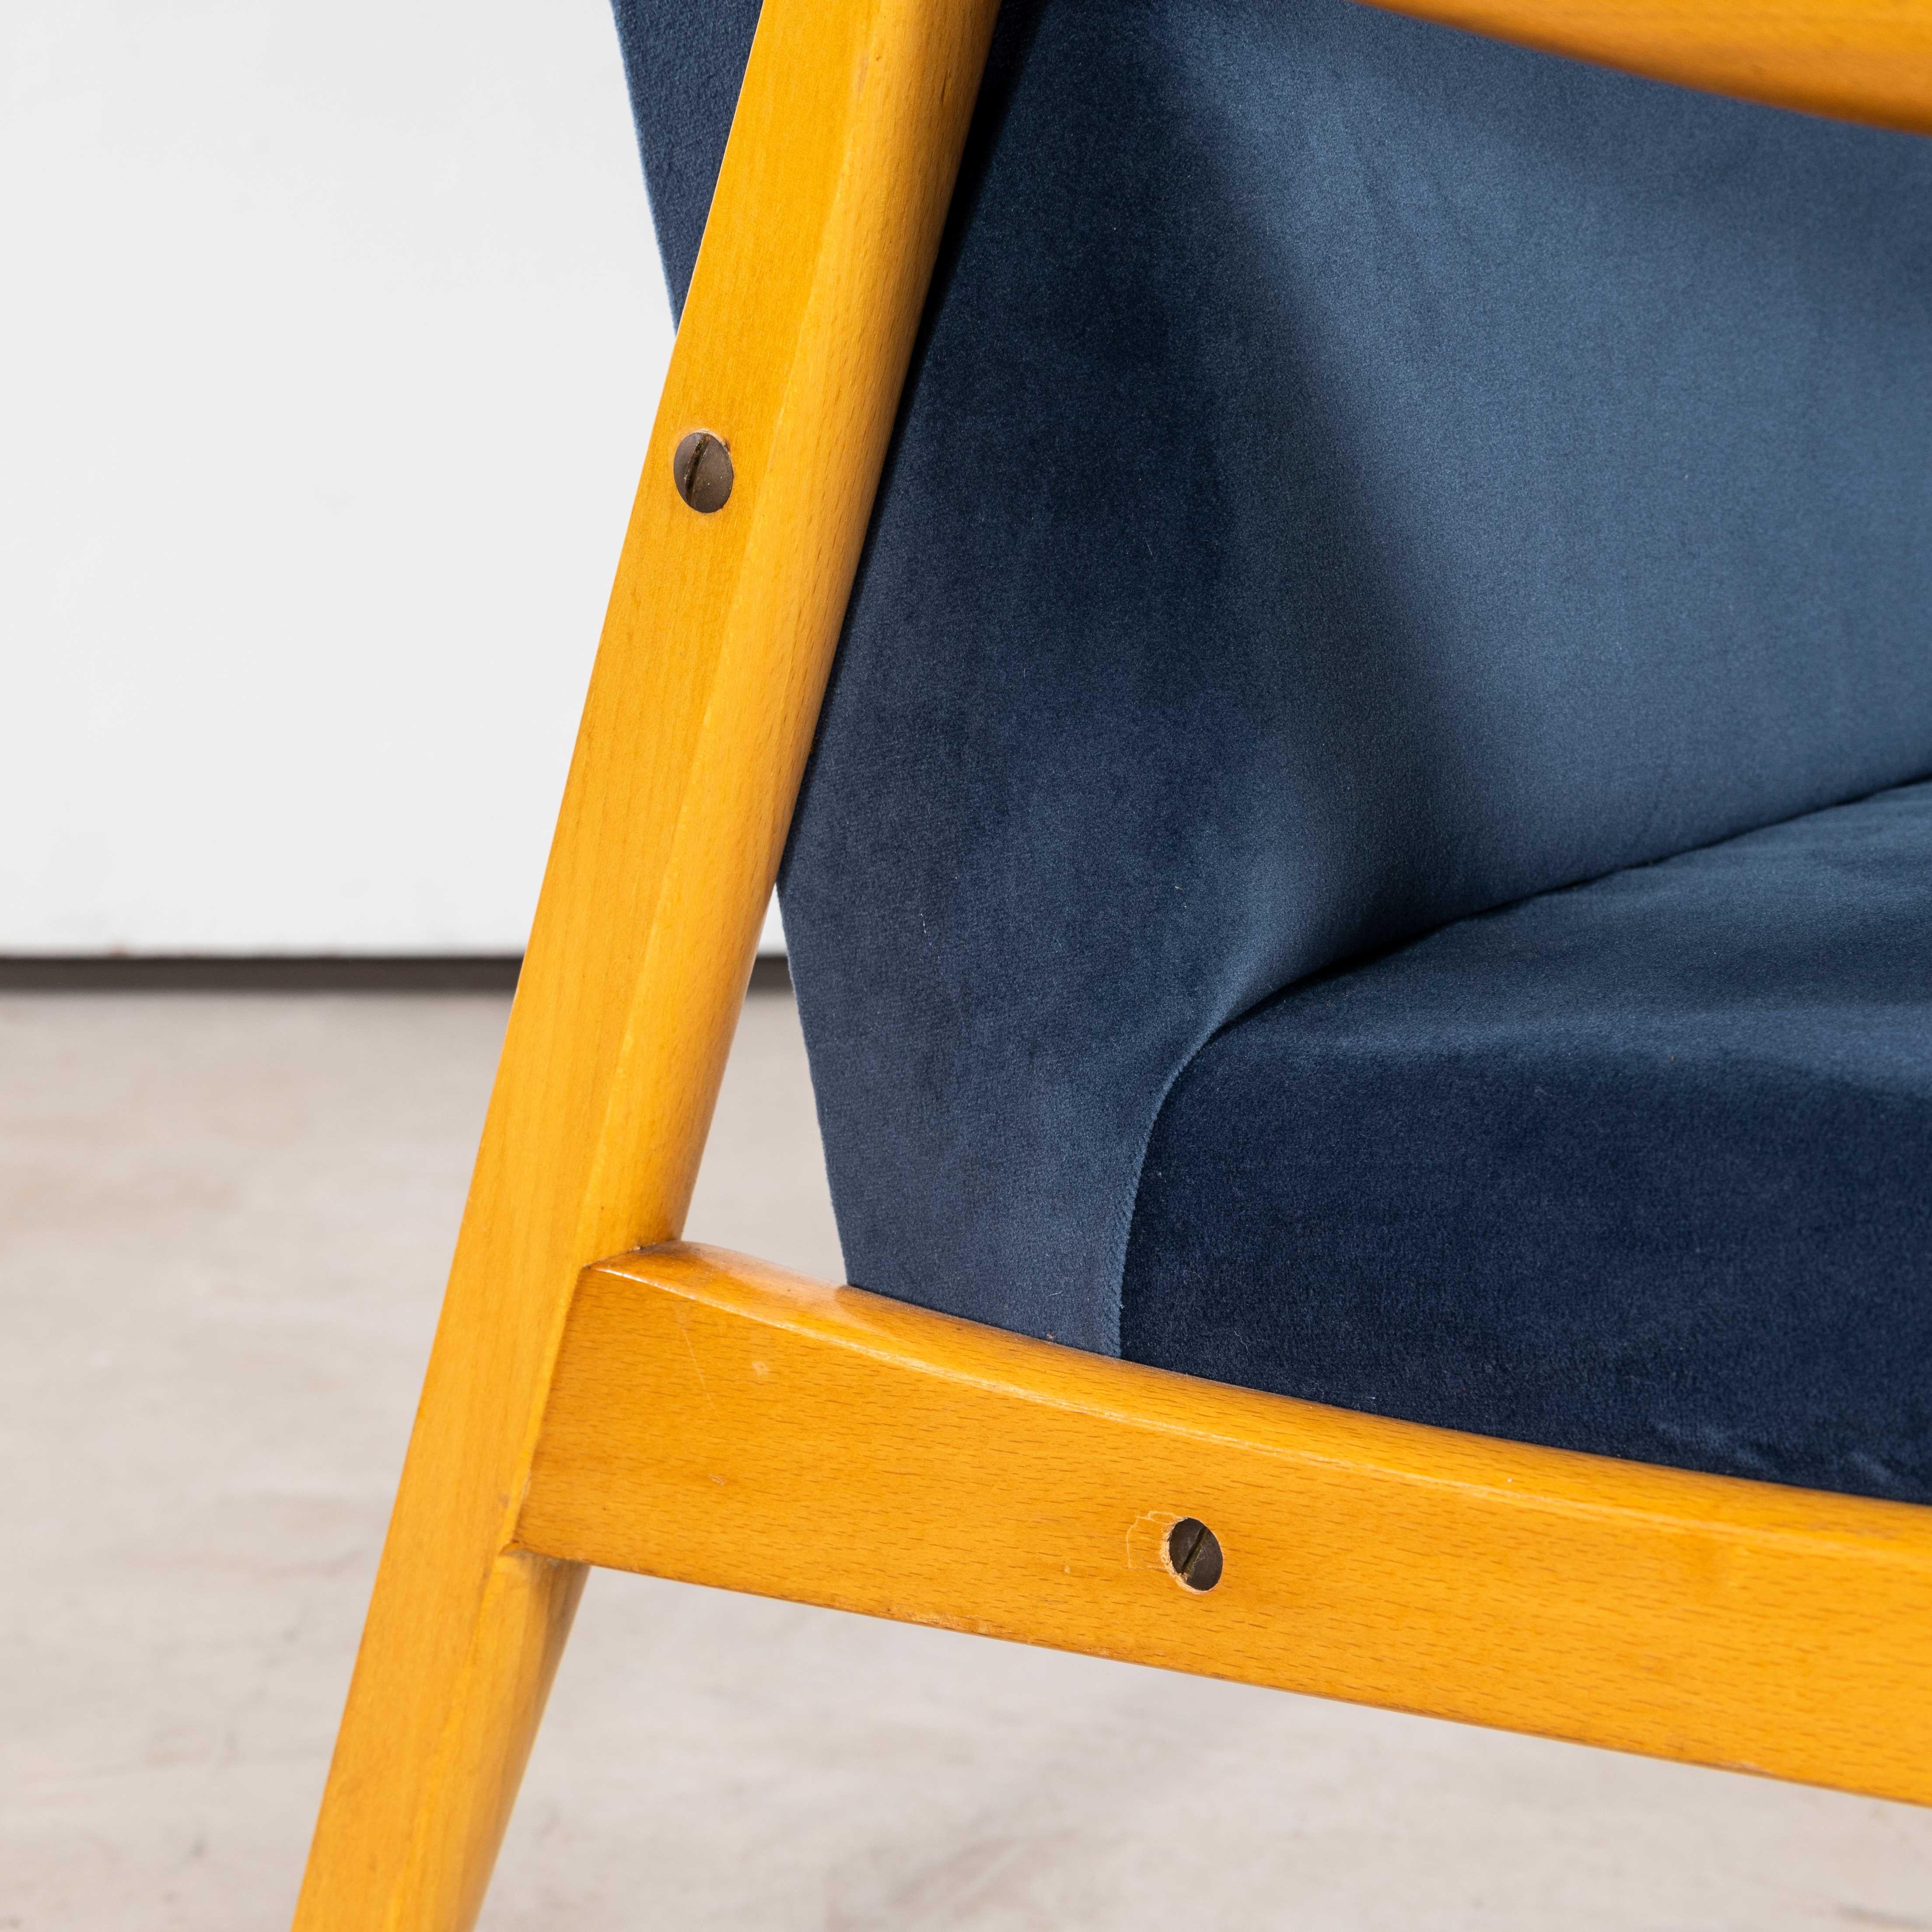 1950er Jahre Jaroslav Smidek Original wieder gepolsterte Sessel - Paar in Teal Blue
1950's Jaroslav Smidek Original Re-gepolstert Sessel - Paar in Teal Blue. Direkt aus der Tschechischen Republik stammend, ist dies eines der elegantesten Designs von